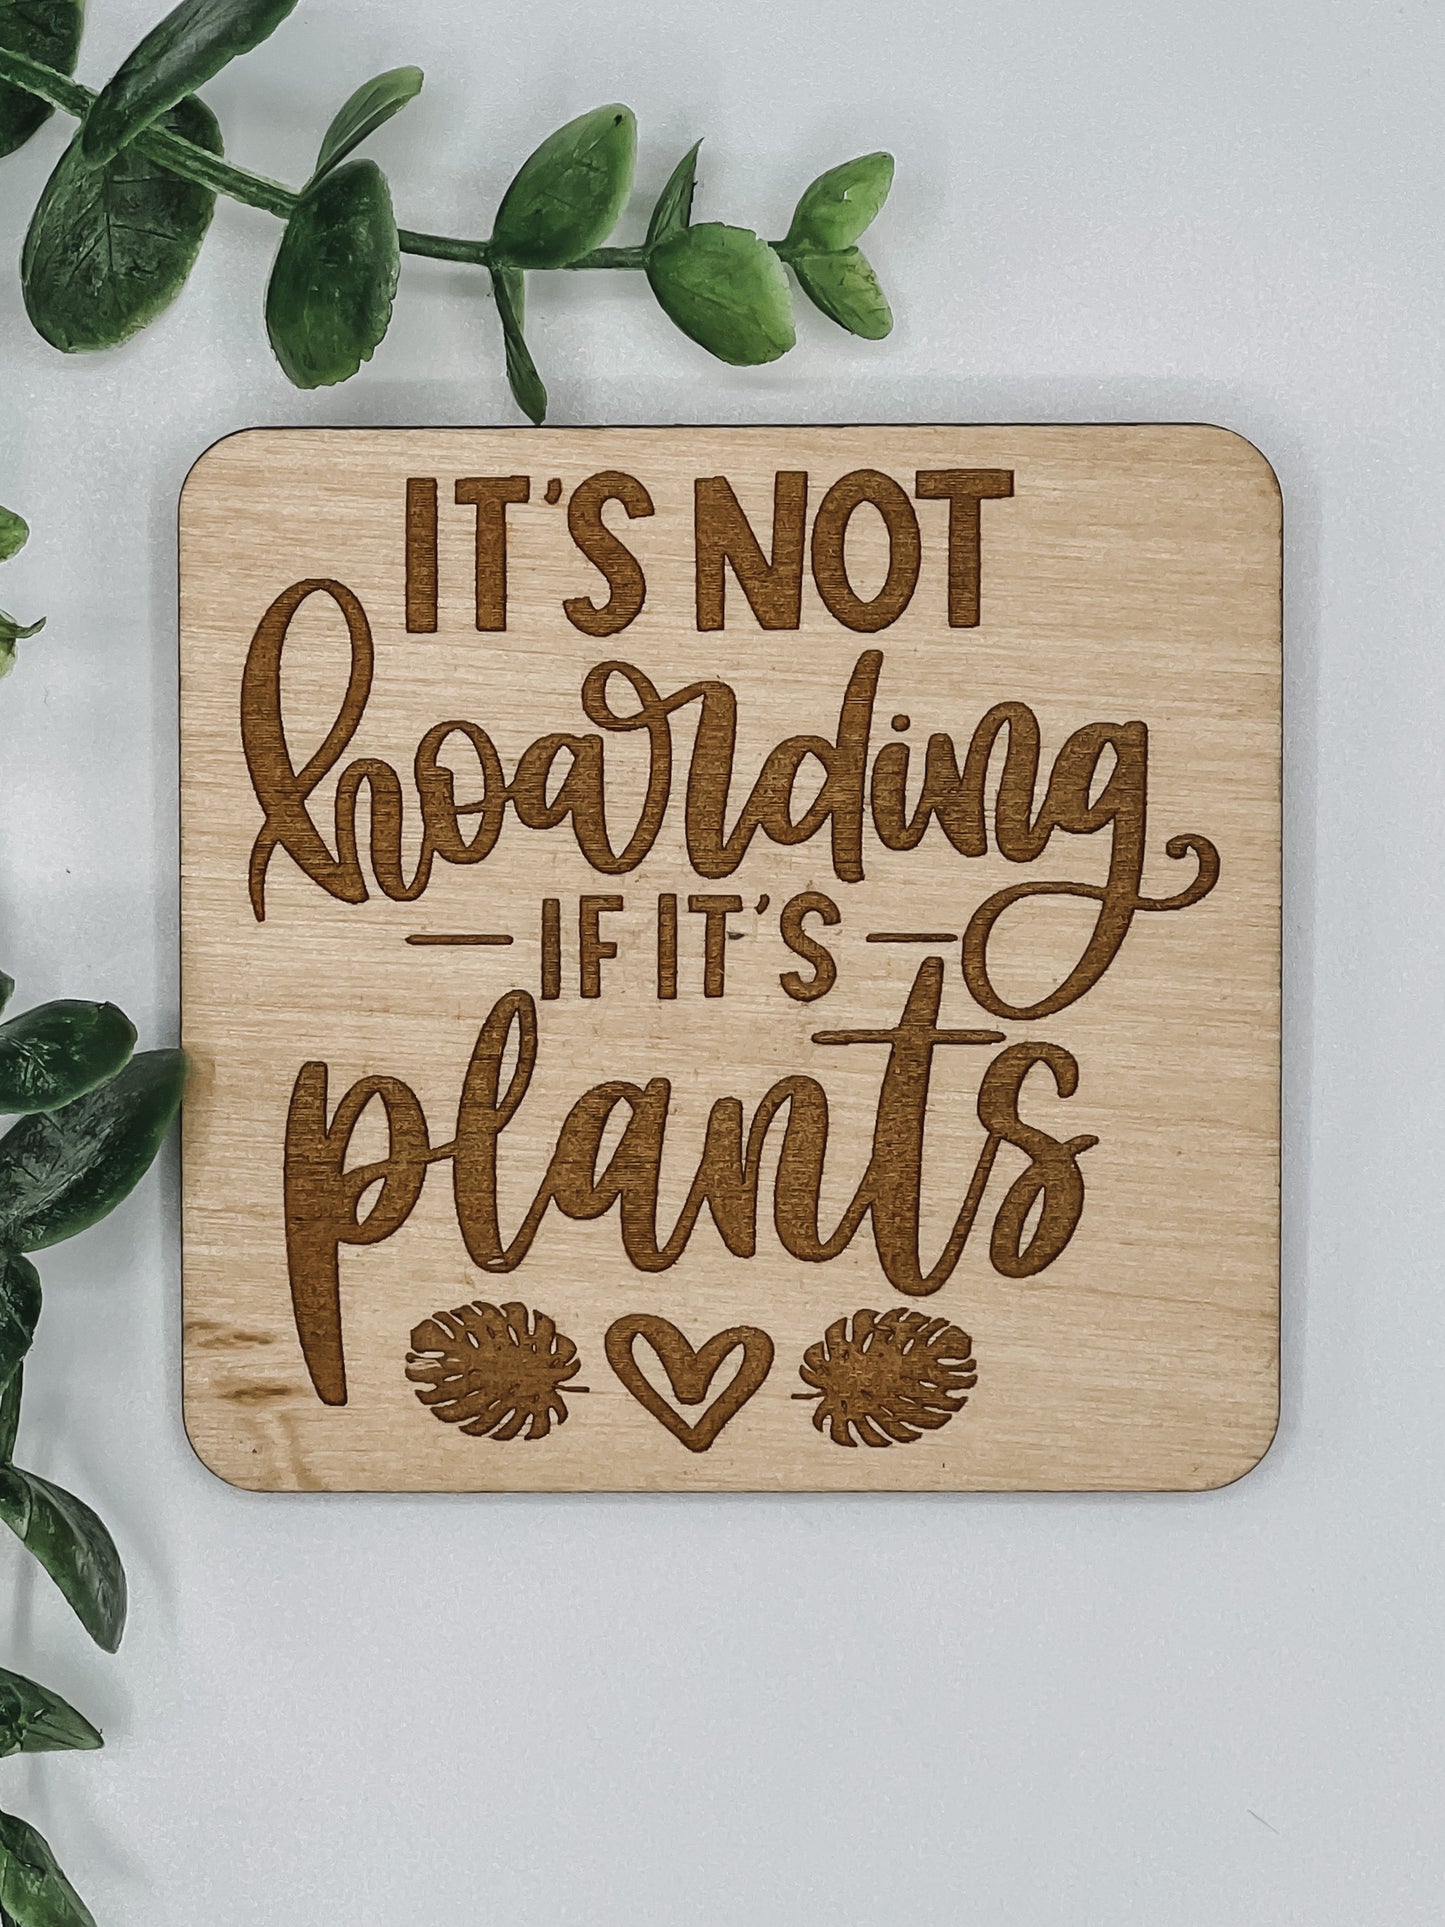 It’s not hoarding if it’s plants